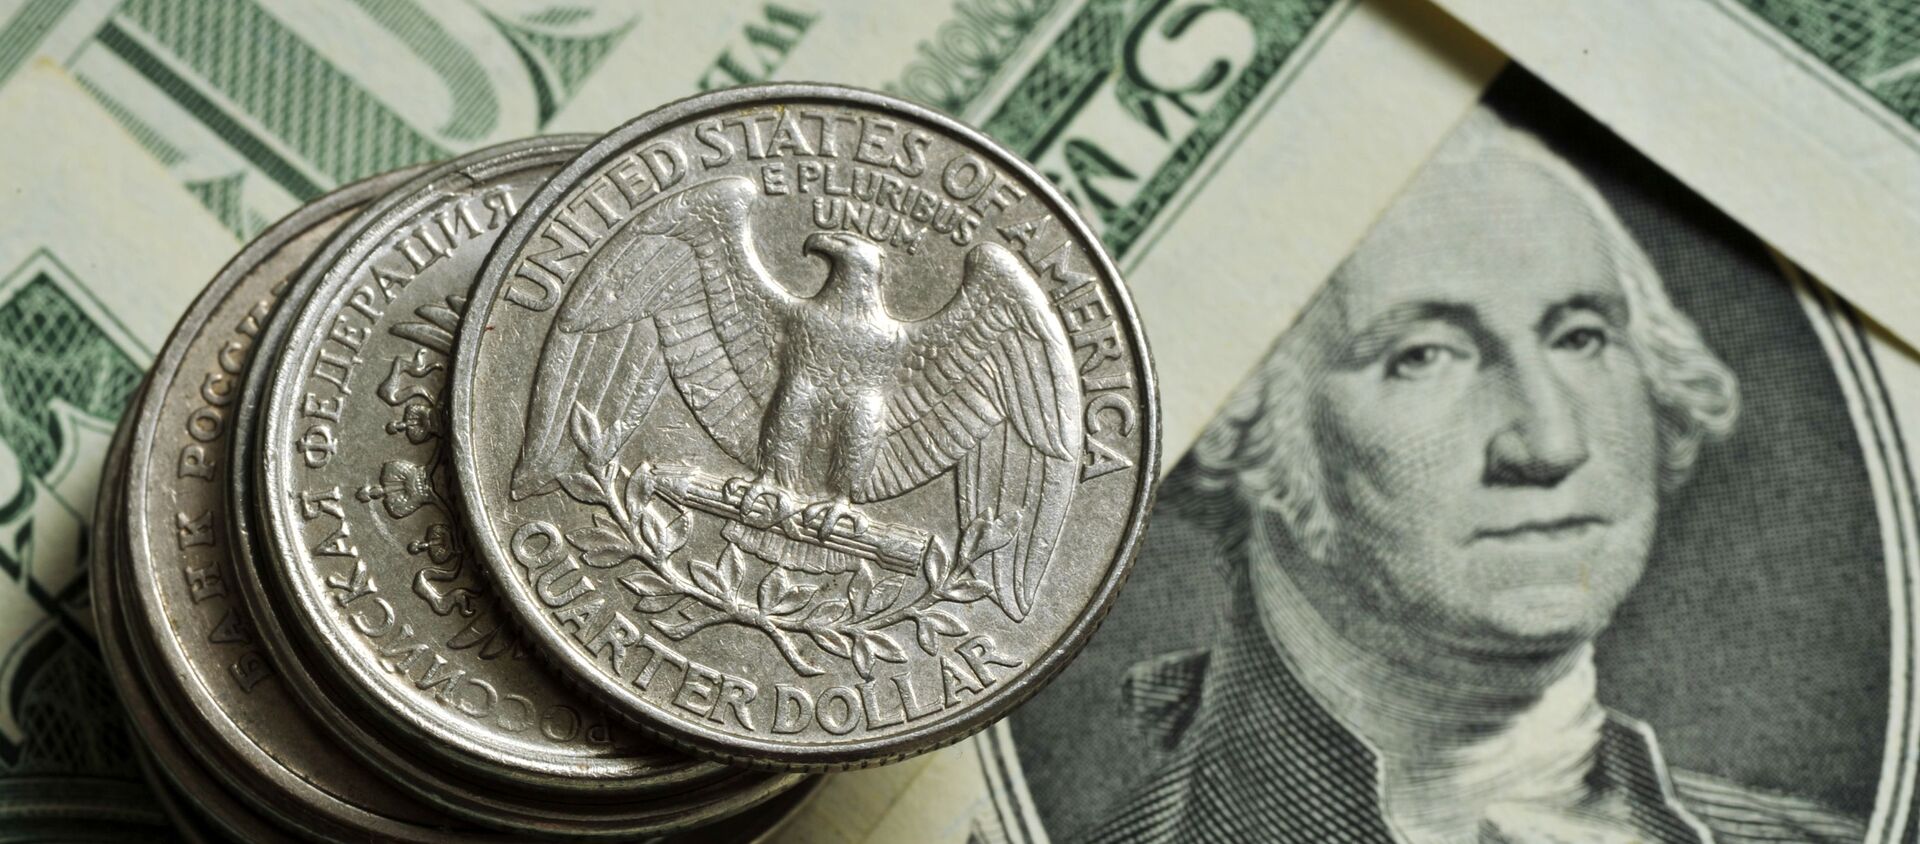 Монеты различного номинала Монетного двора США на фоне банкноты номиналом 1 доллар США. - Sputnik Армения, 1920, 20.11.2020